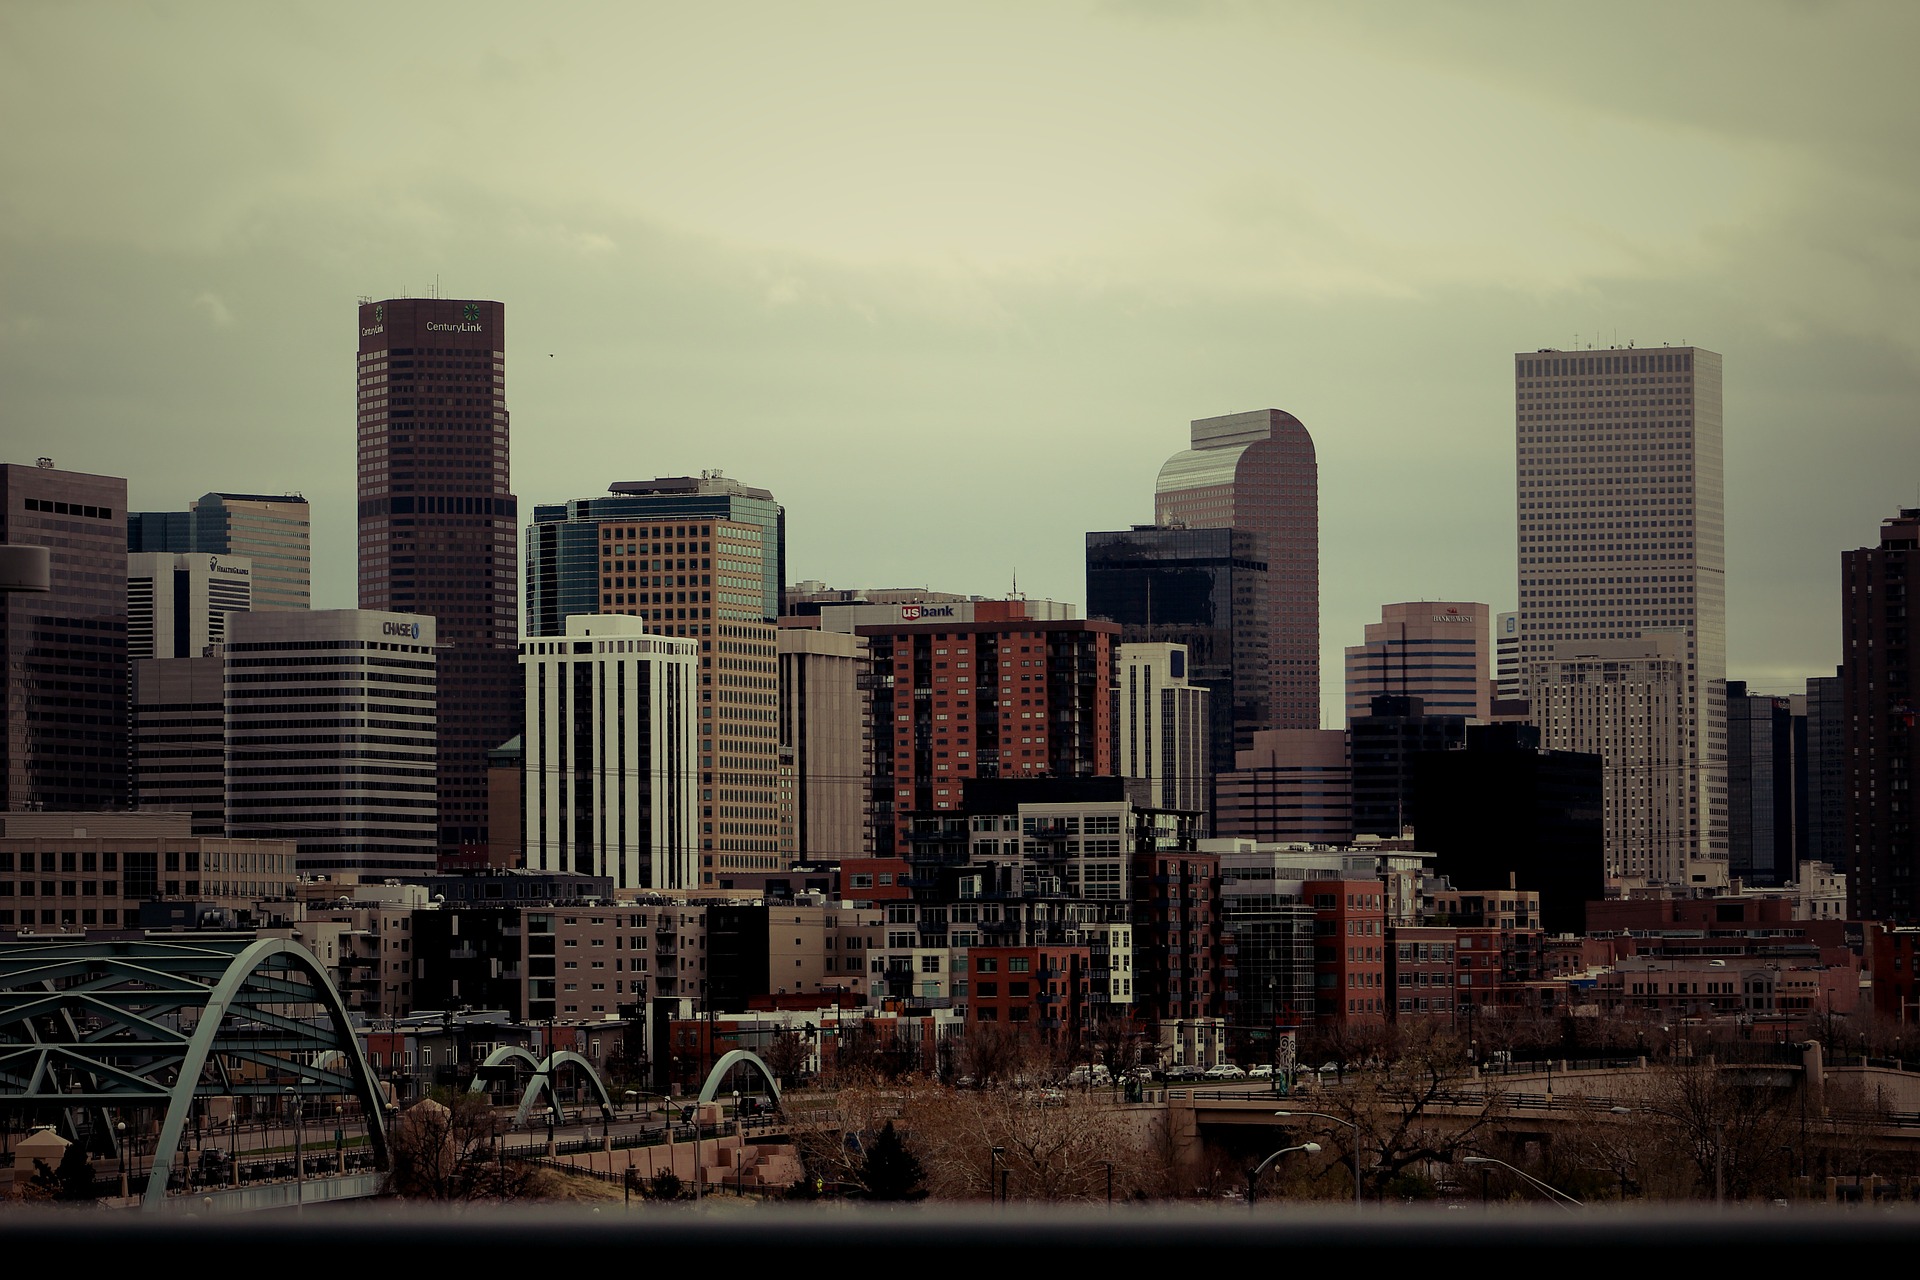 Image of the Denver, Colorado skyline